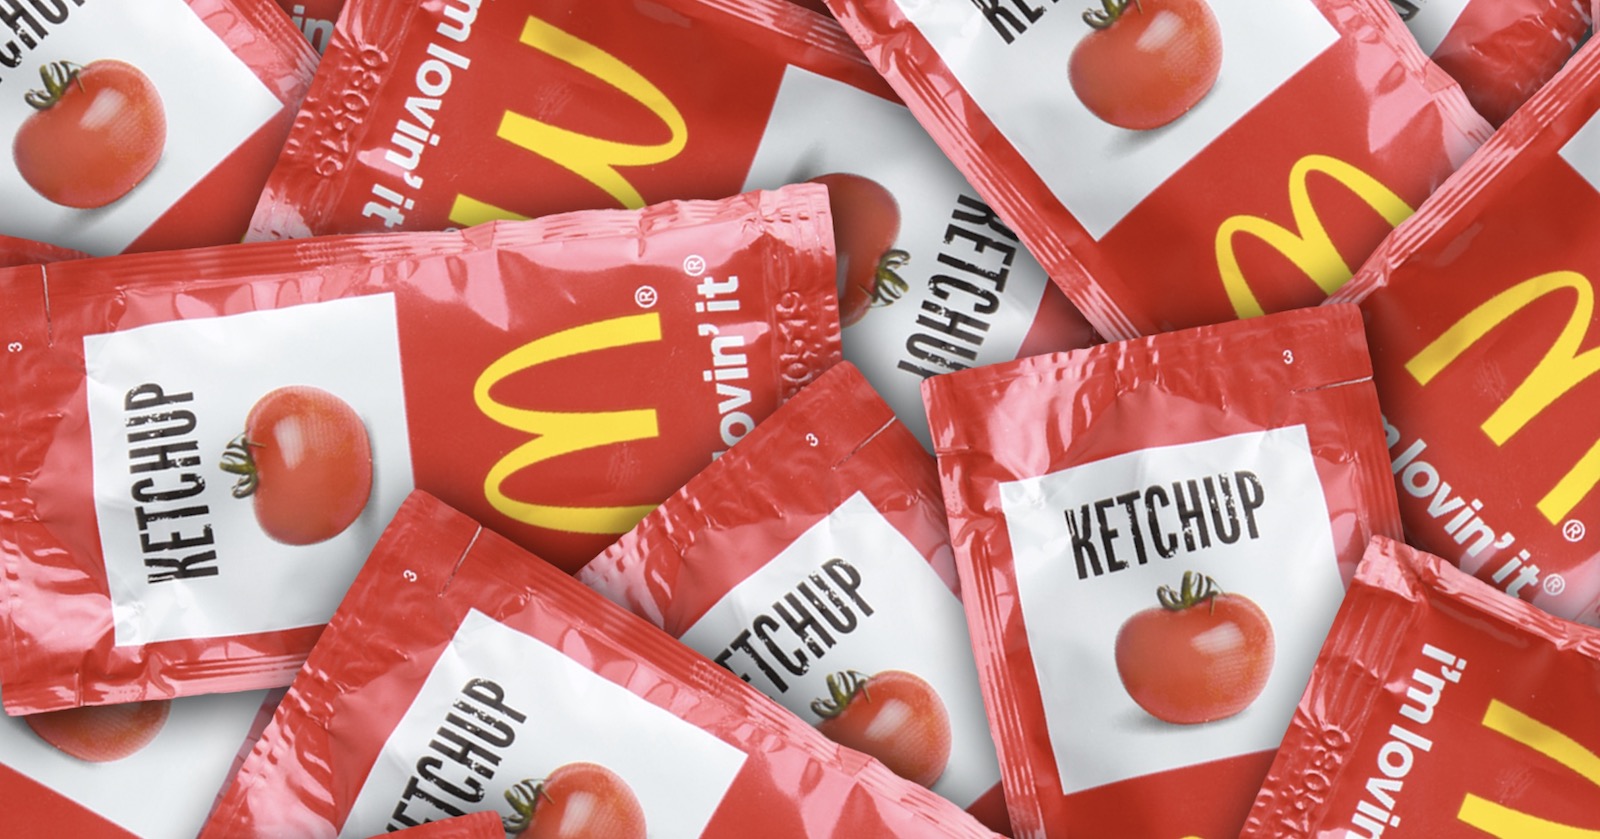 McDonald's ketchup packets